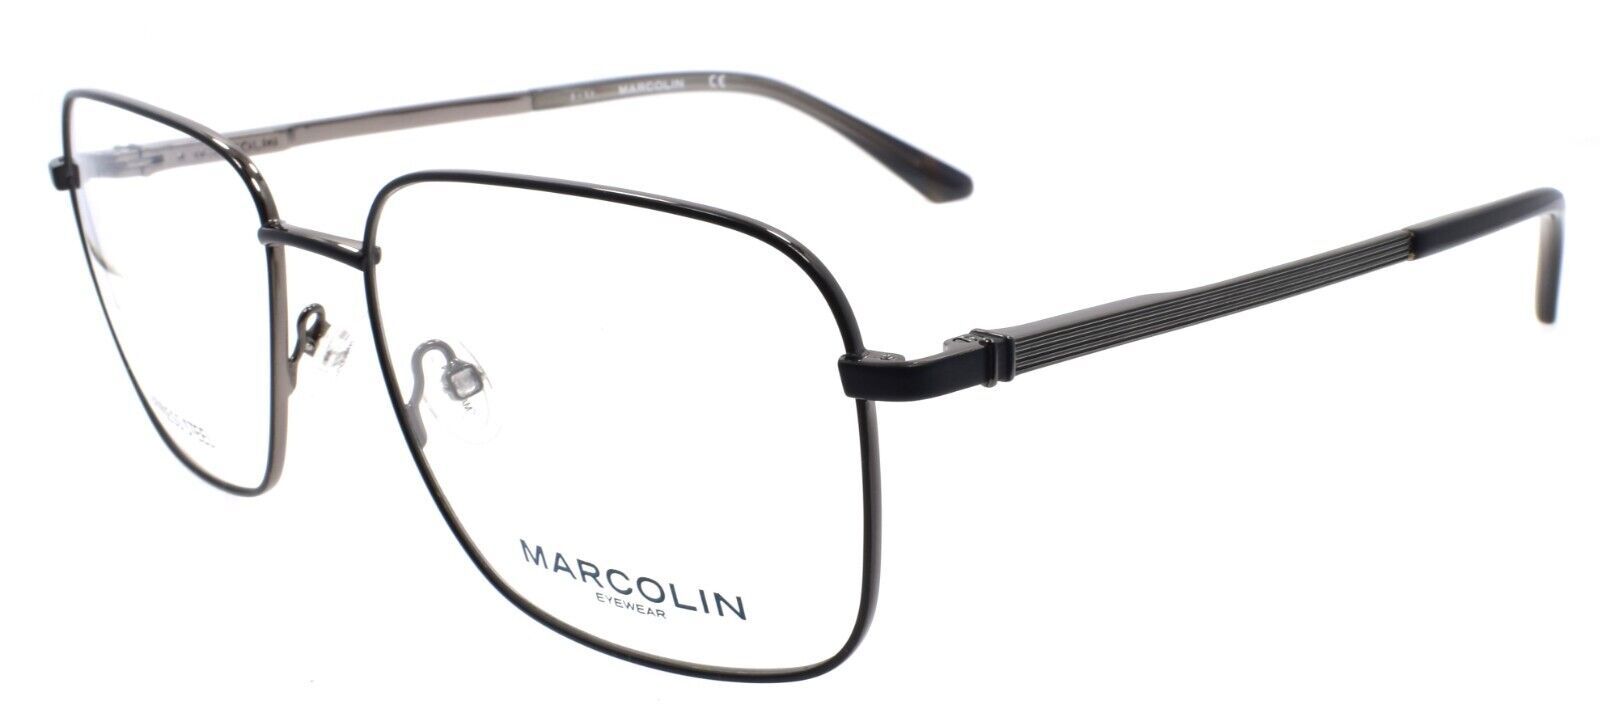 Primary image for Marcolin MA3025 002 Men's Eyeglasses Frames Large 59-17-150 Matte Black